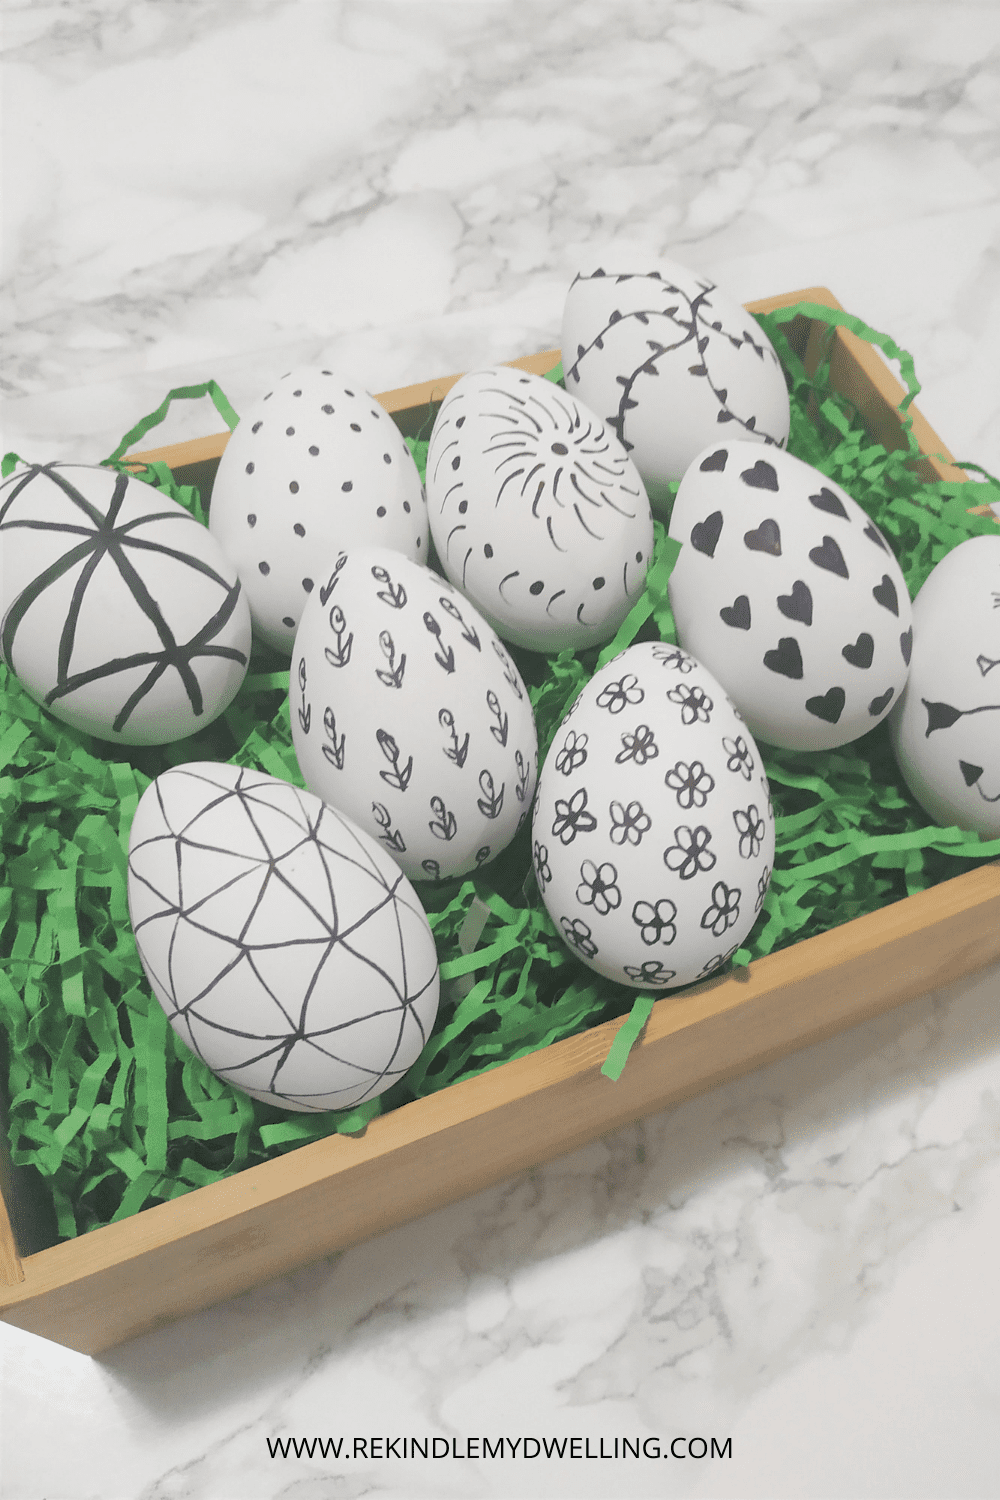 Doodlebug Design Inc Blog: Easter Express Collection: Easter Egg